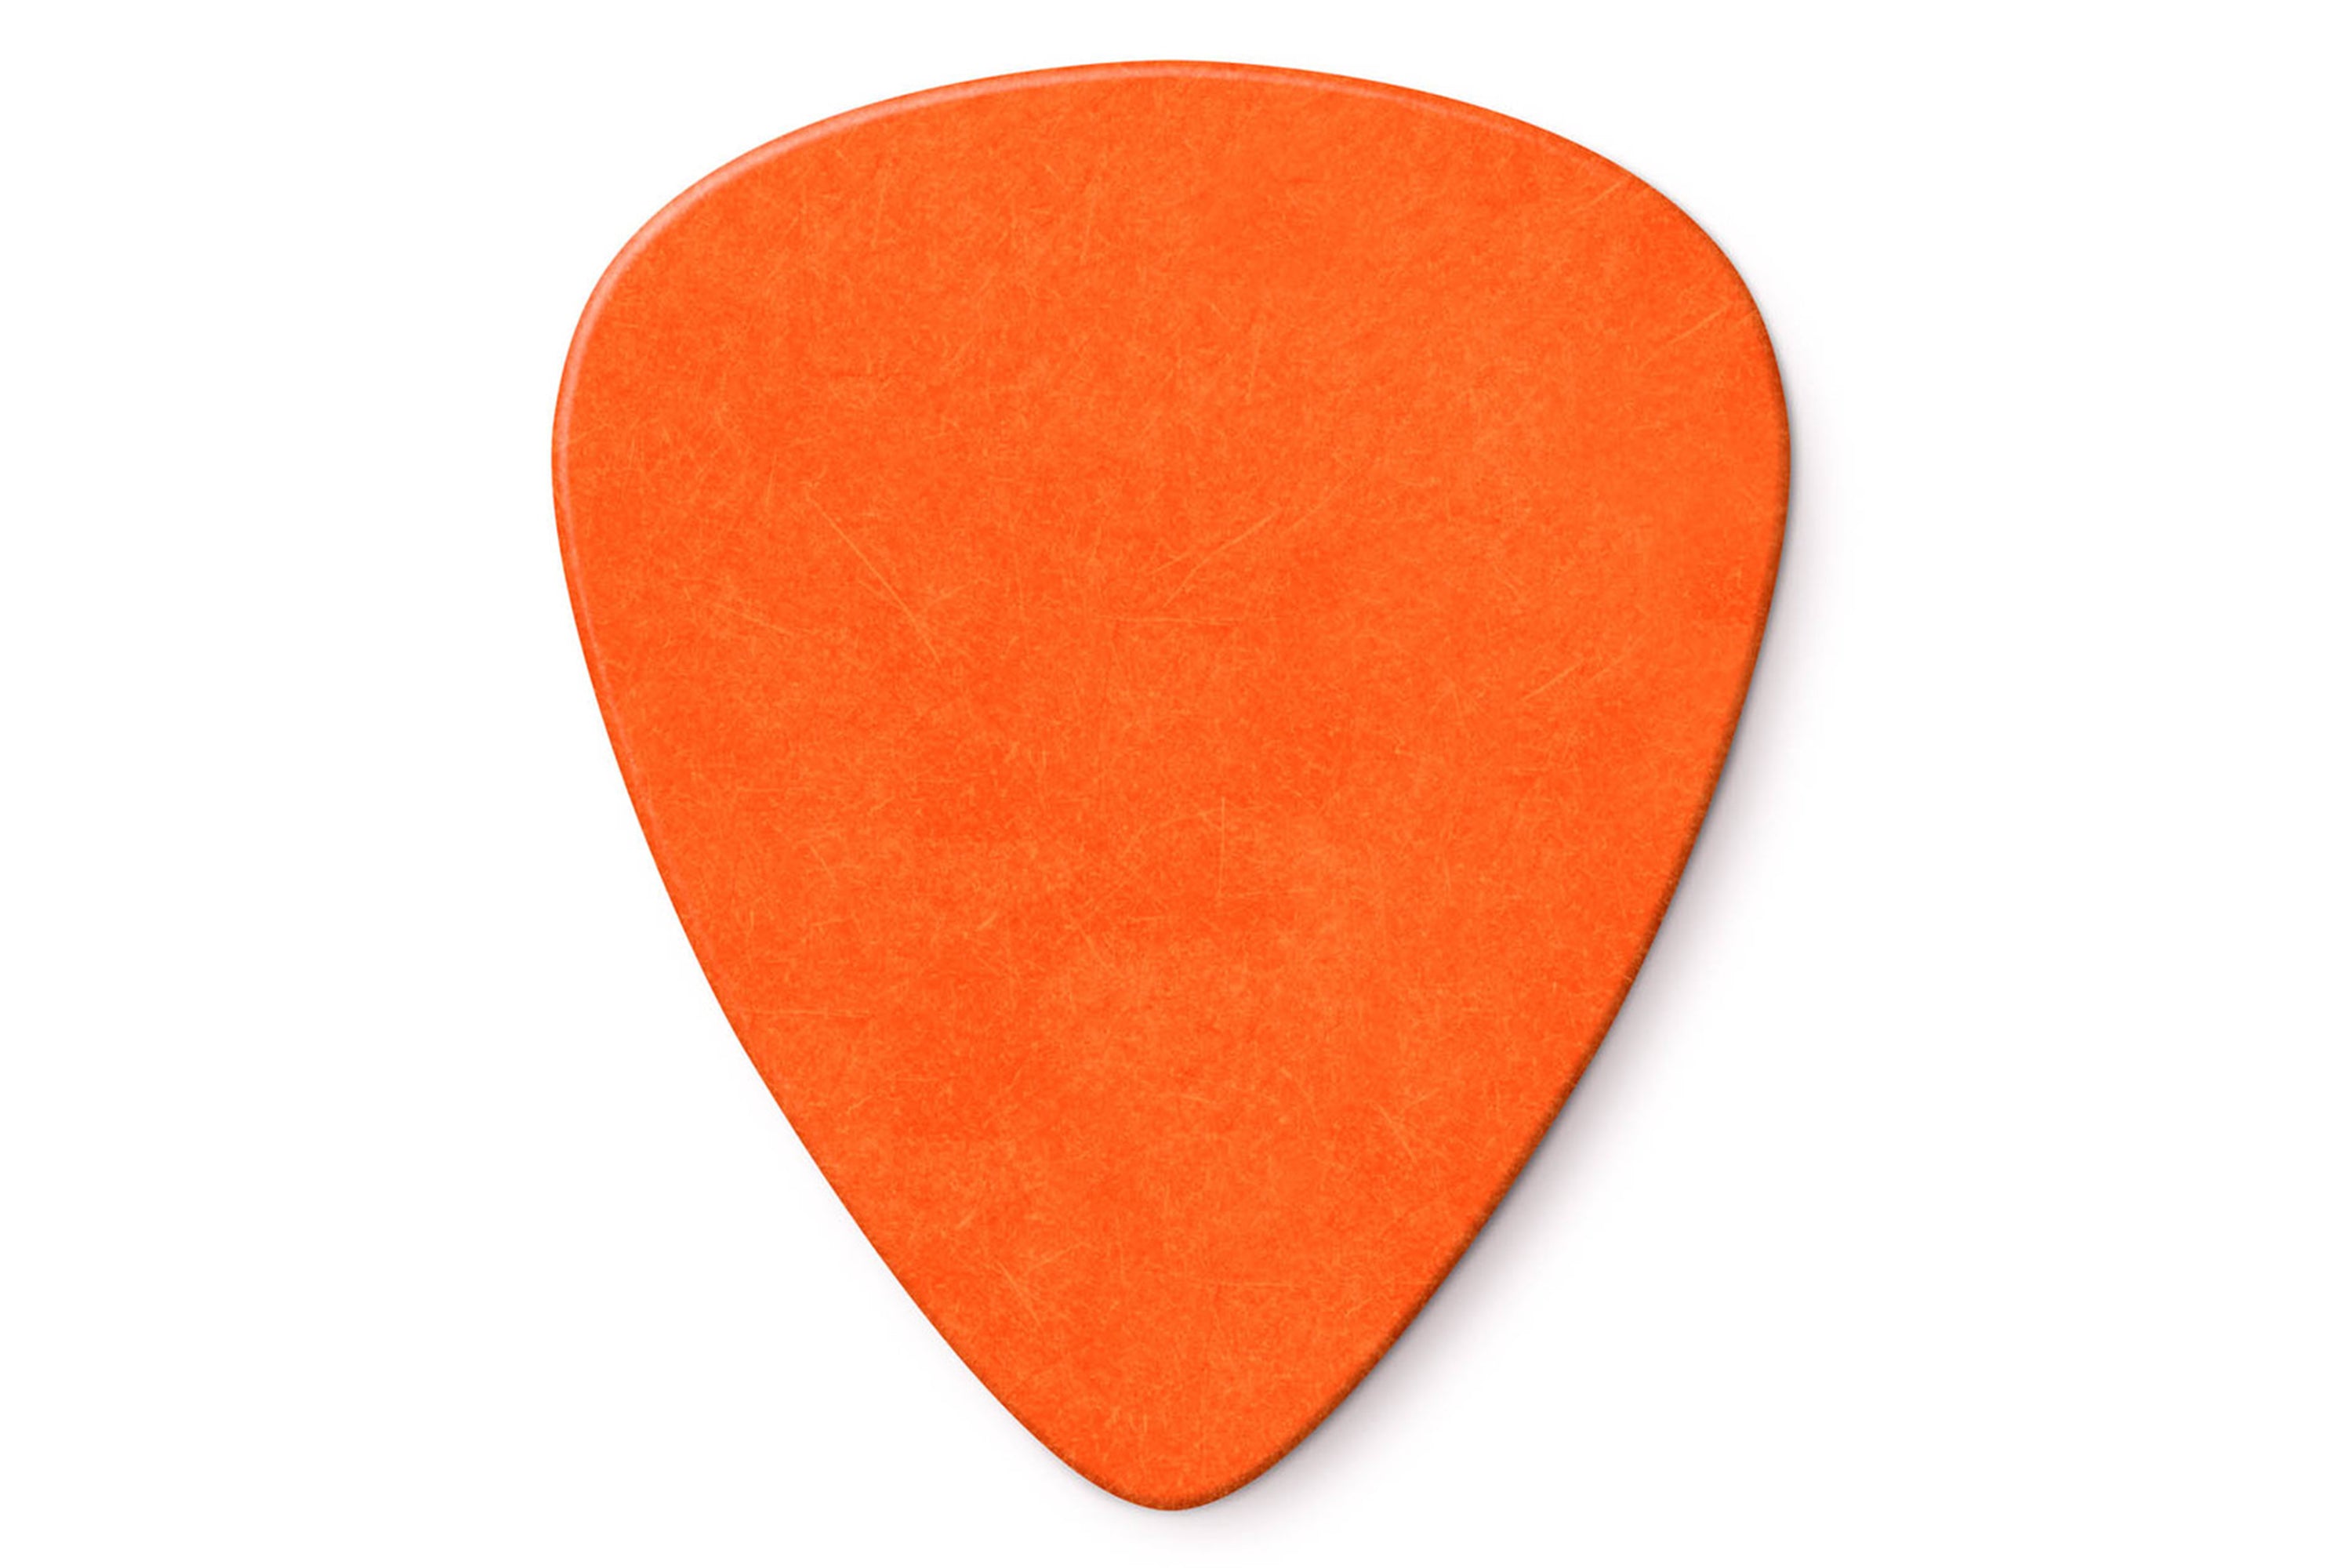 Dunlop Tortex Standard .60mm Orange Guitar & Ukulele Picks 12 Pack